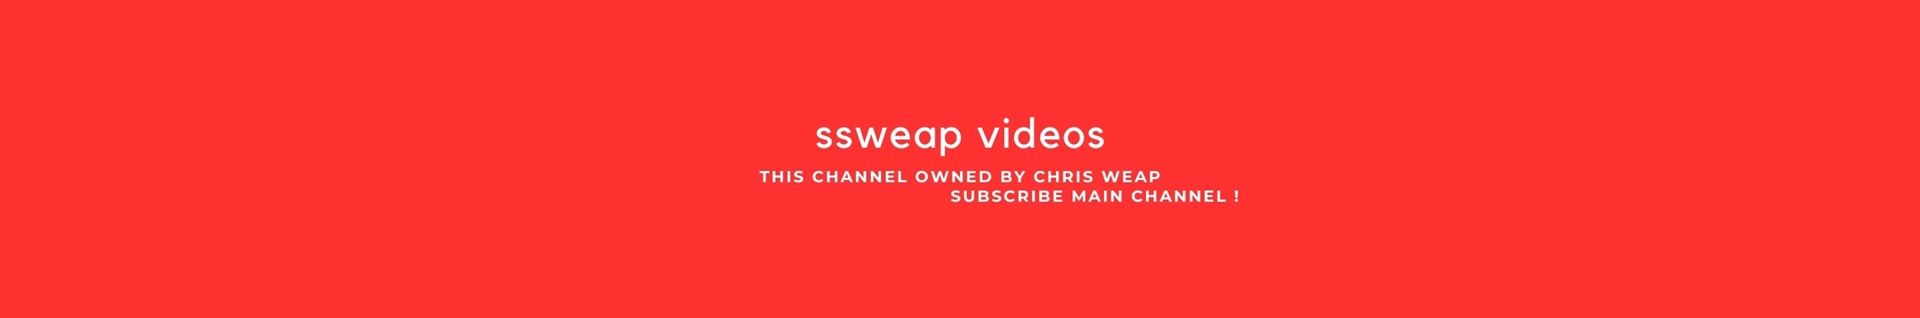 chris weap | ssweap